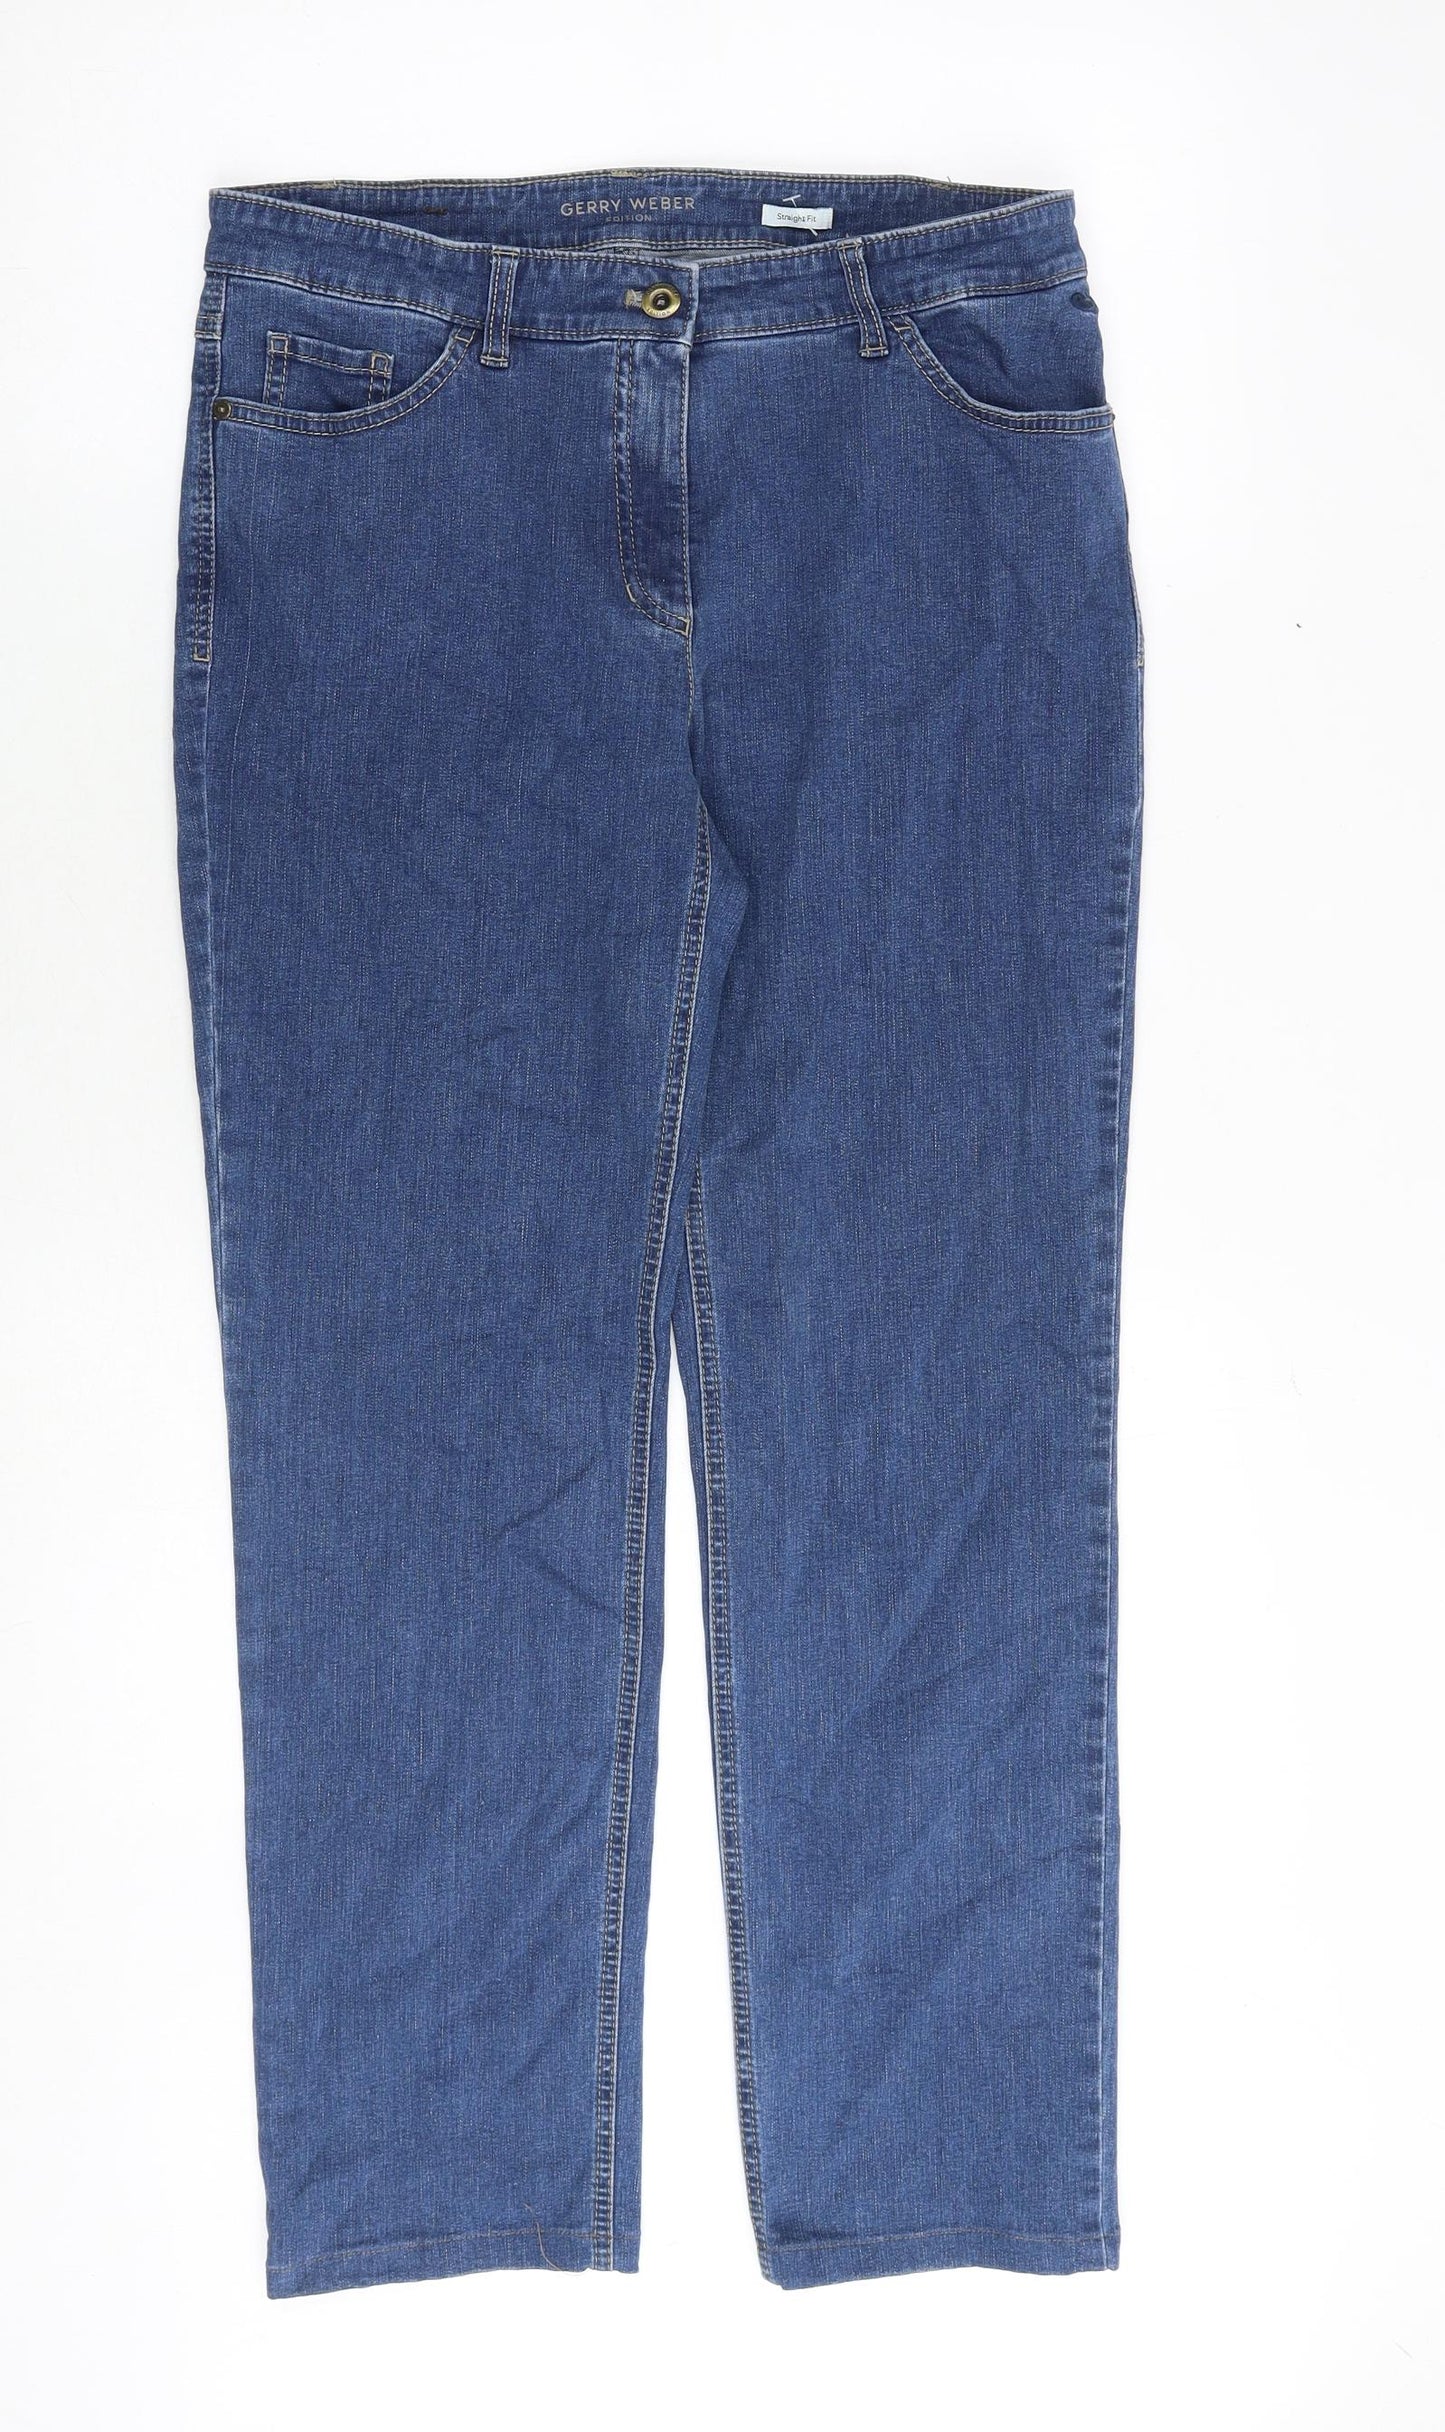 Gerry Weber Womens Blue Cotton Straight Jeans Size 14 Regular Zip